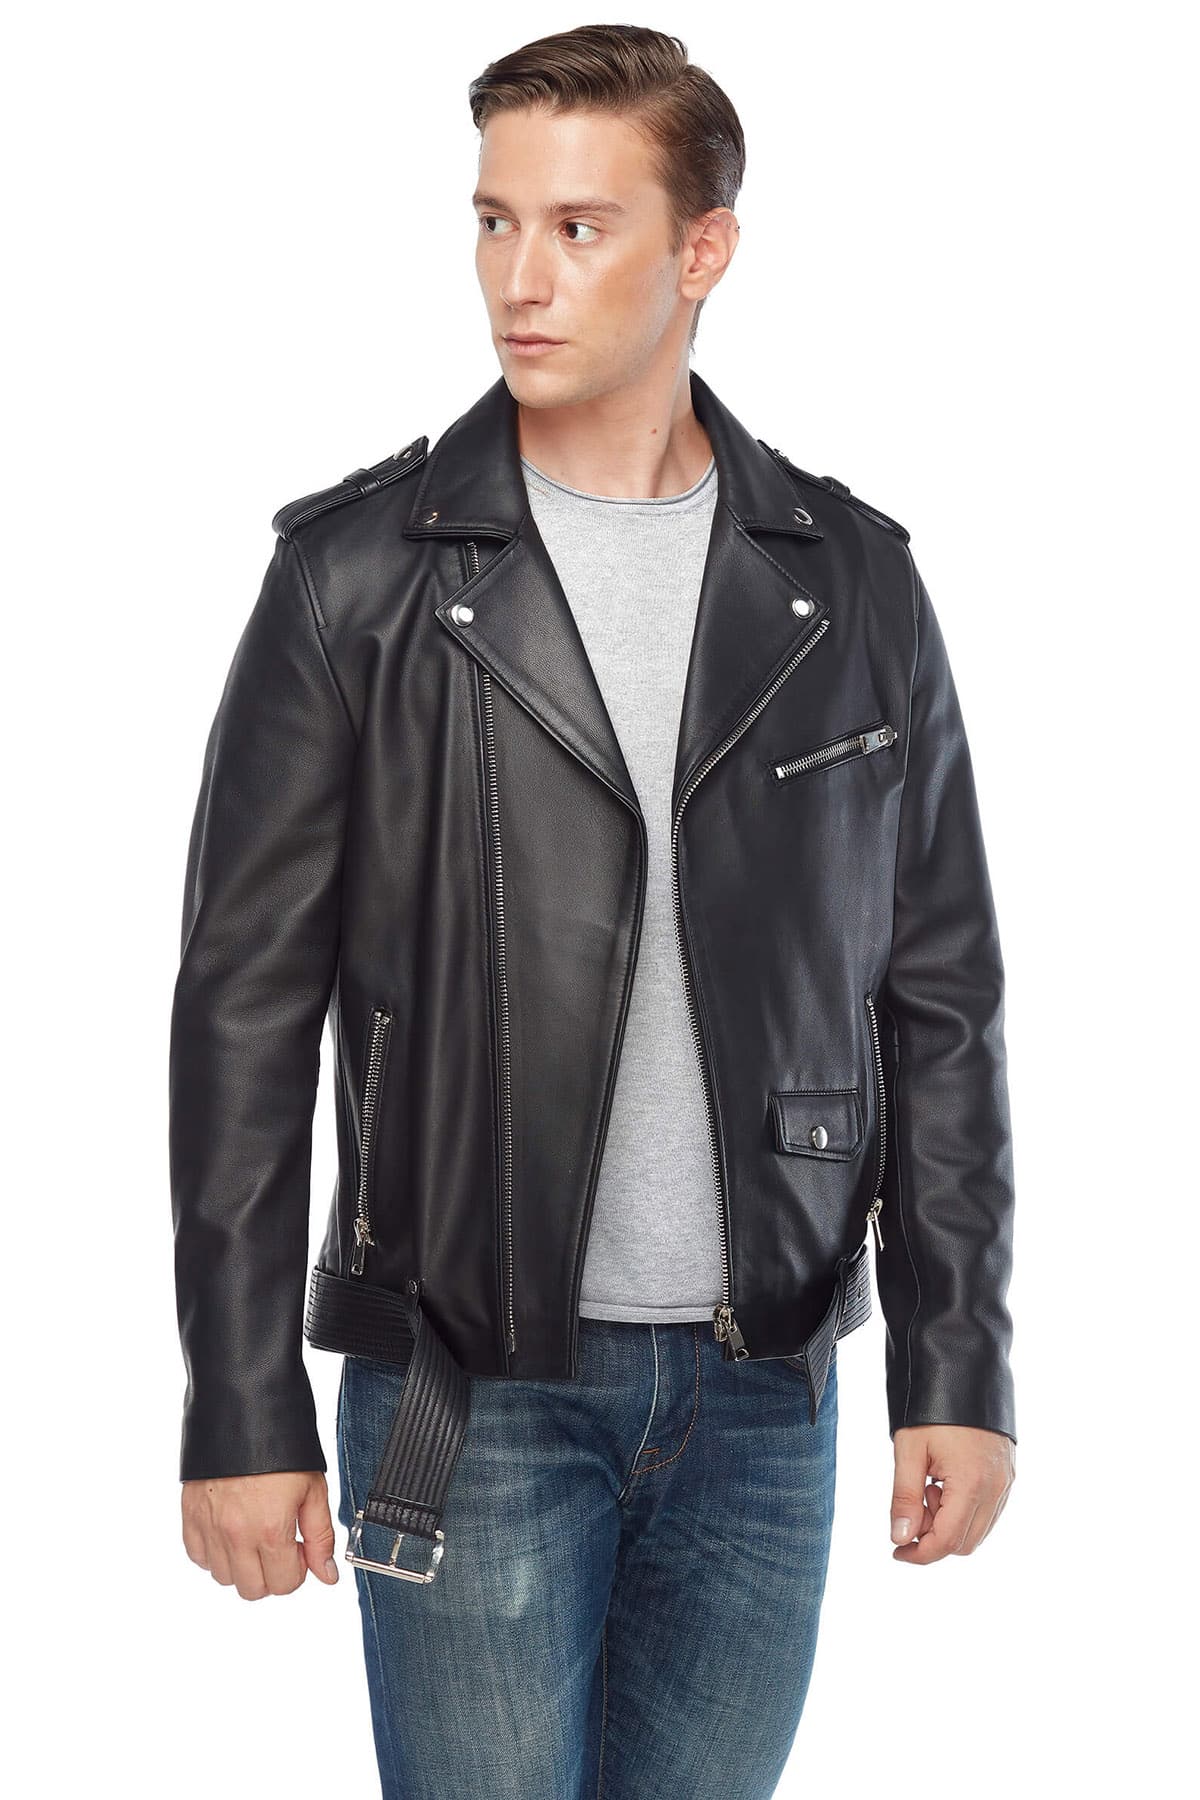 Lewis Tan Genuine Leather Biker Jacket Black2